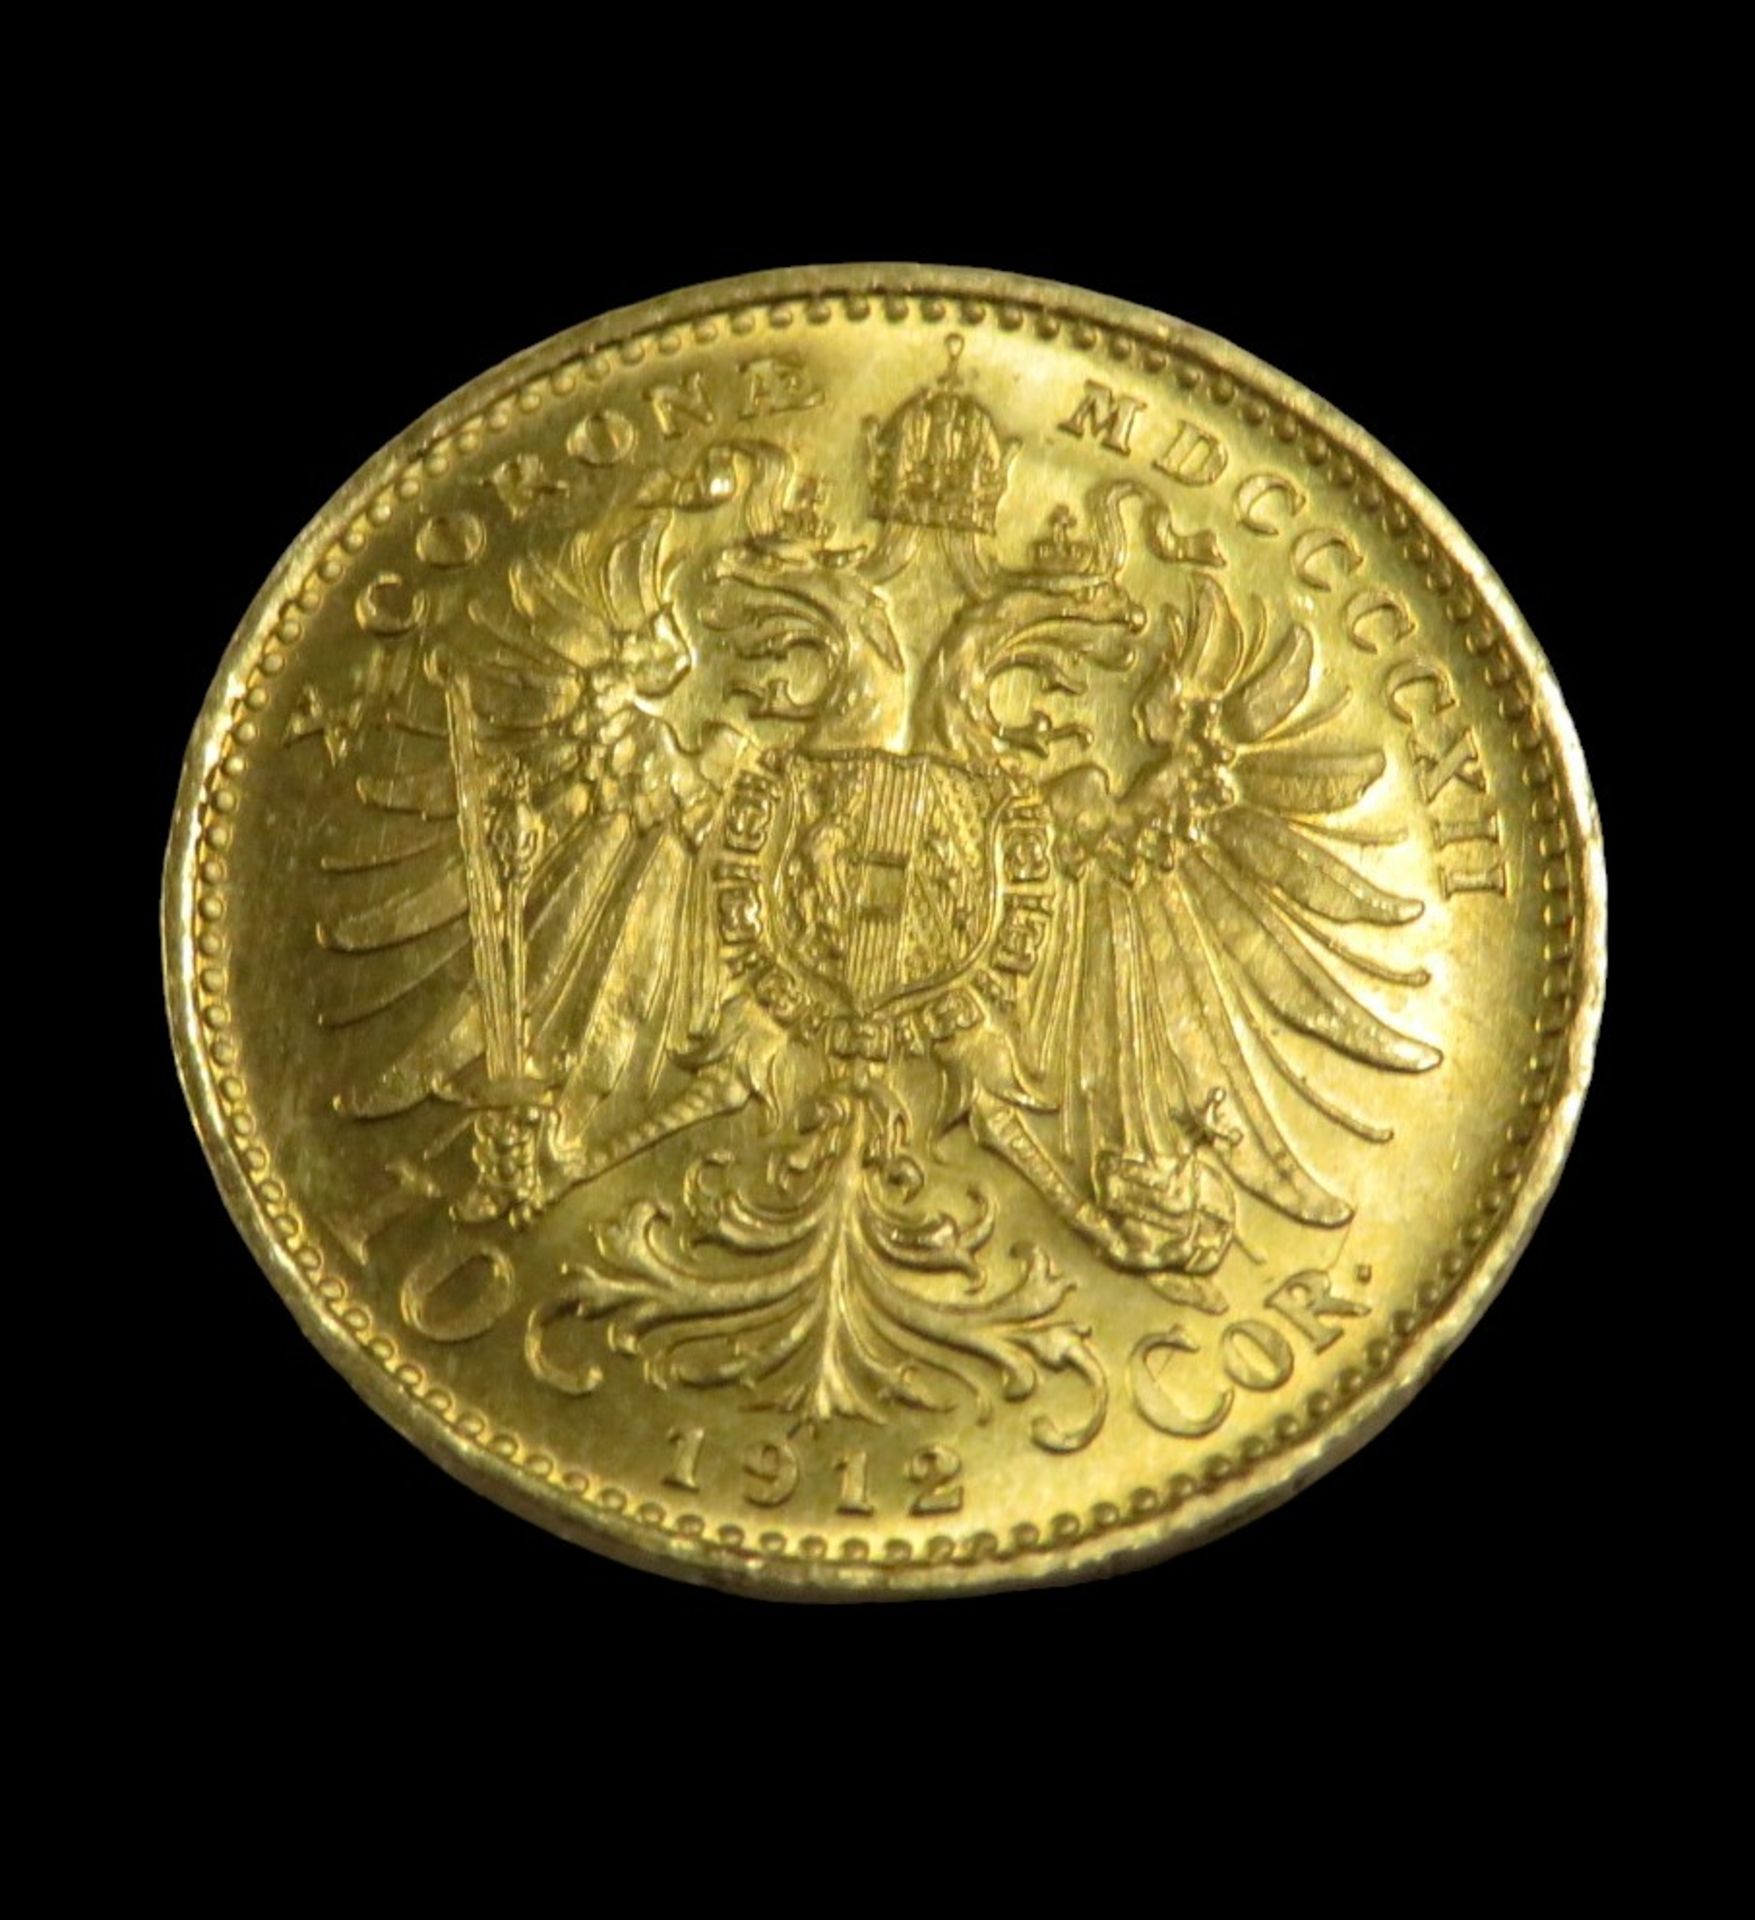 Goldmünze, Österreich, 10 Kronen, Franz Joseph I, 1912, Gold 900/000, 3,3 g, d 1,9 cm. - Bild 2 aus 2